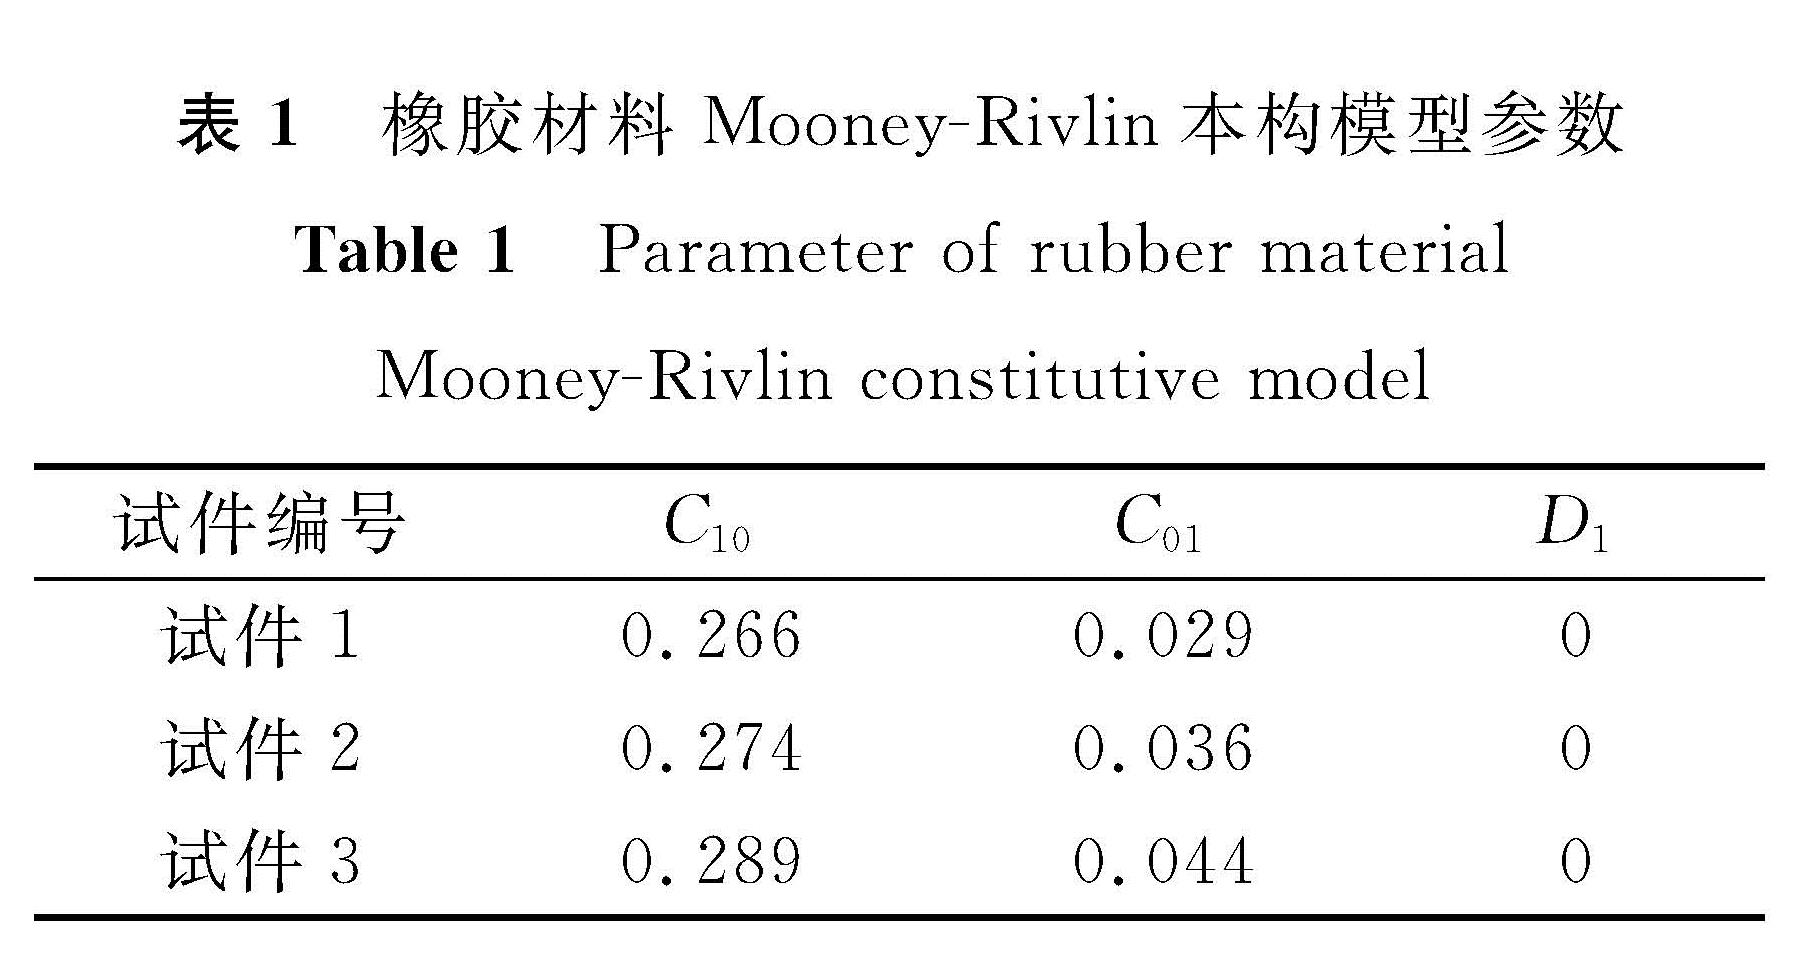 表1 橡胶材料Mooney-Rivlin本构模型参数<br/>Table 1 Parameter of rubber material Mooney-Rivlin constitutive model